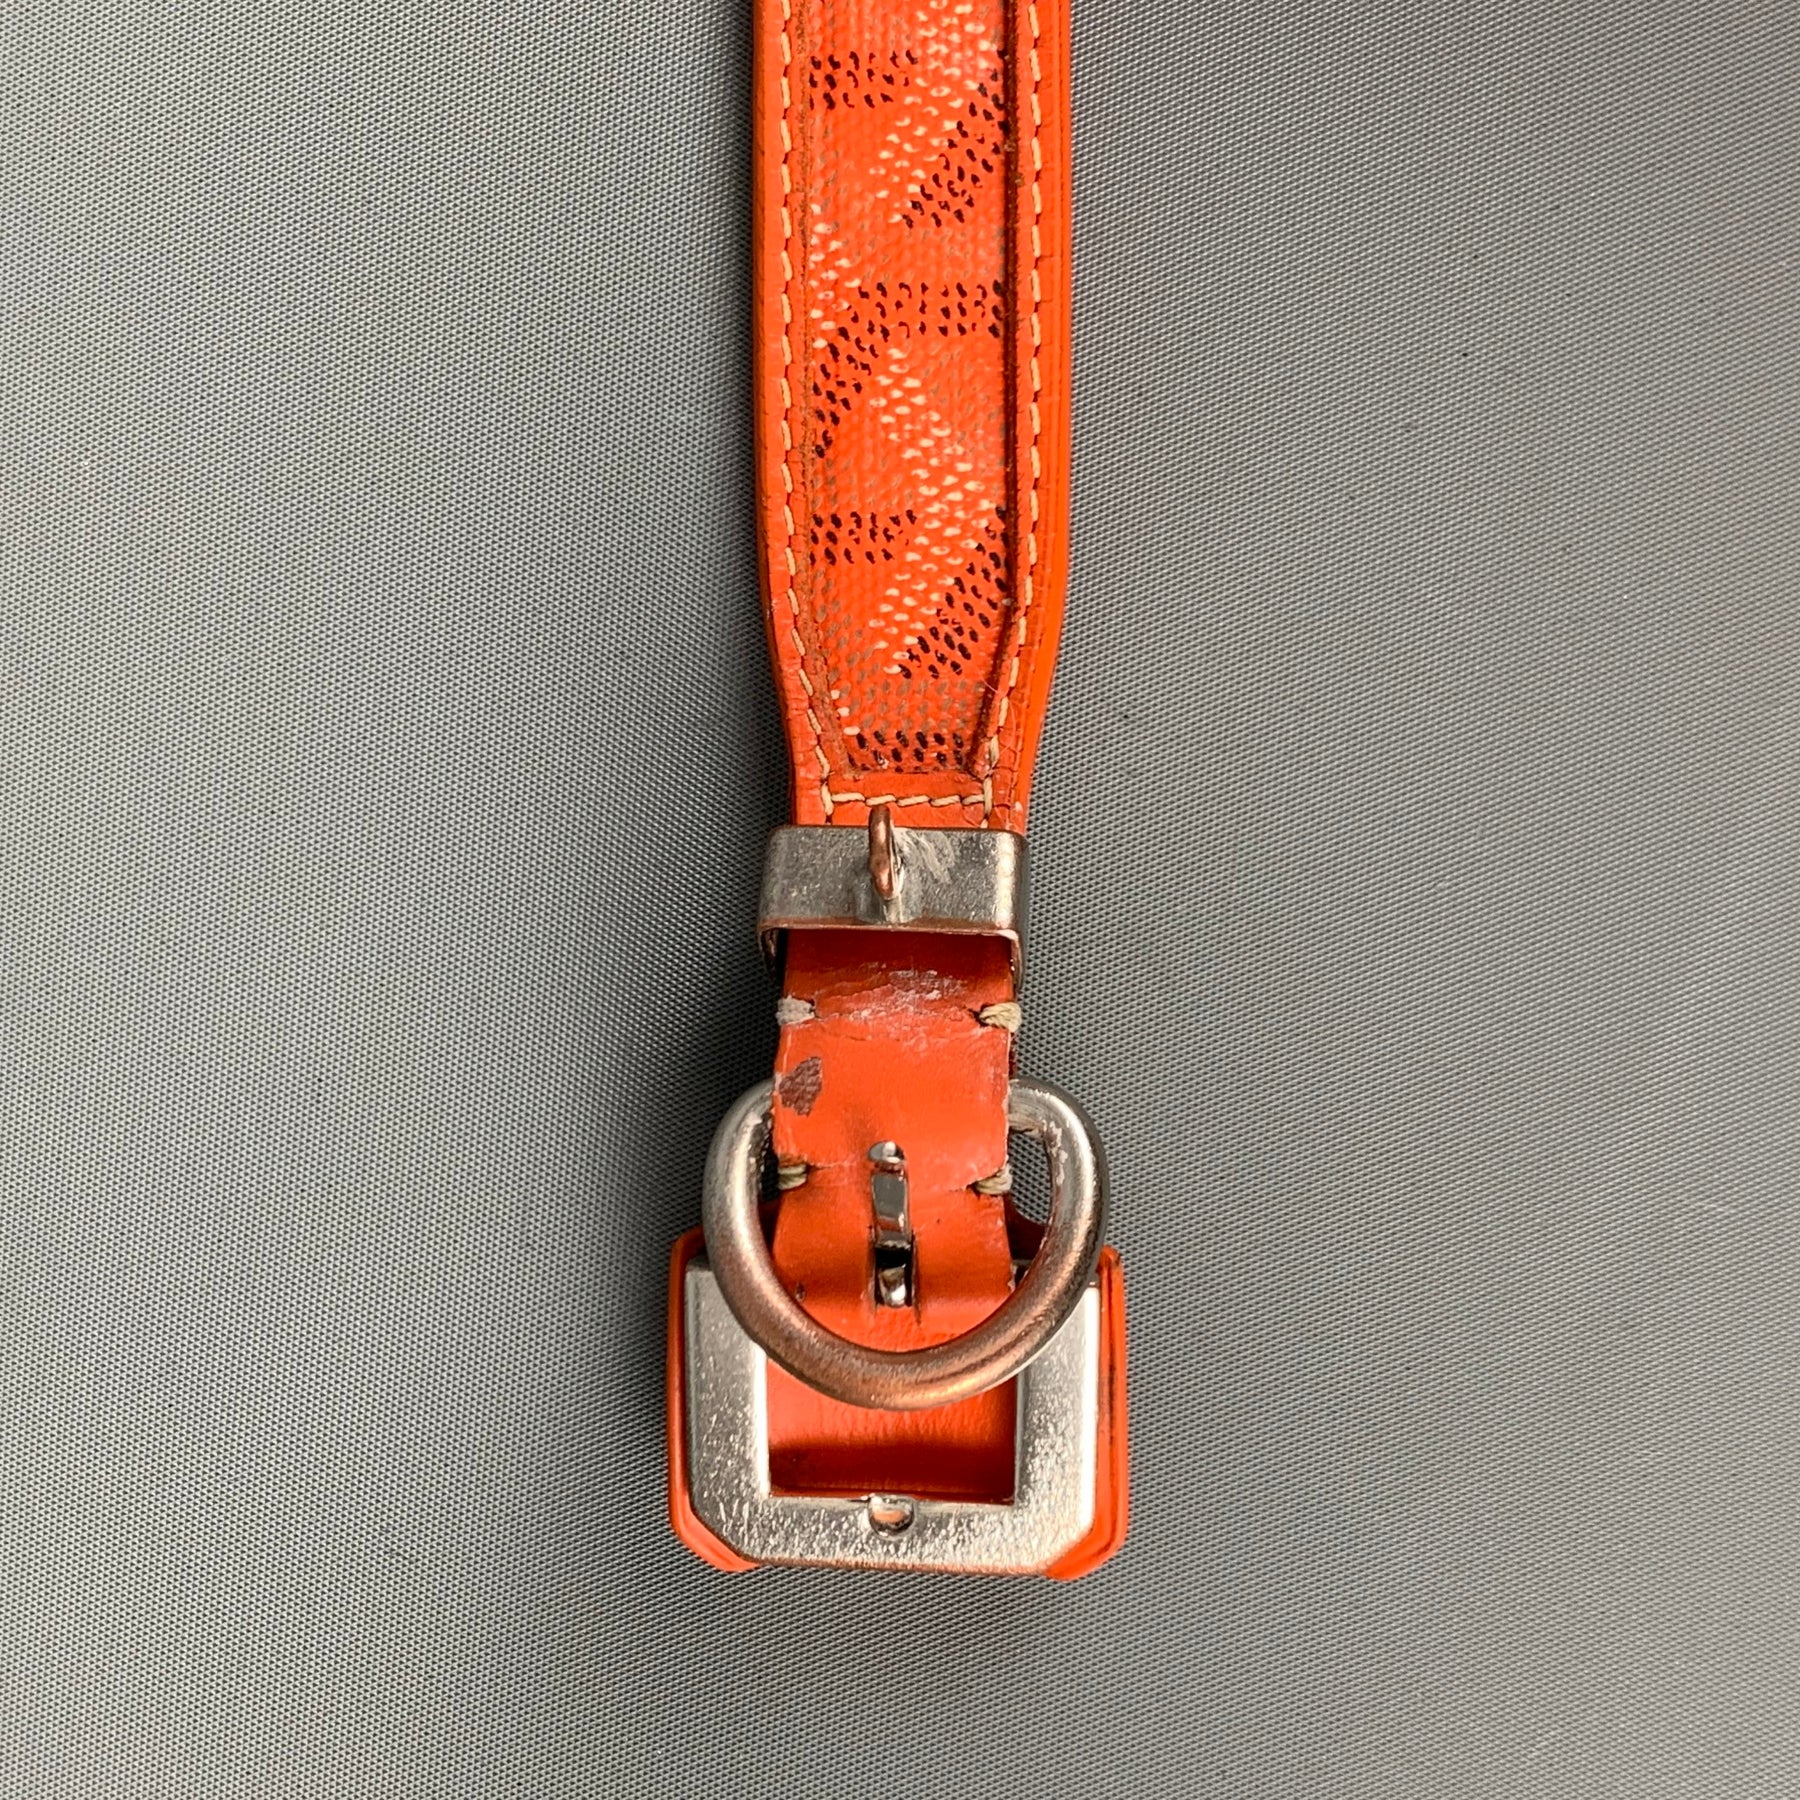 Goyard Leather Dog Collar Orange